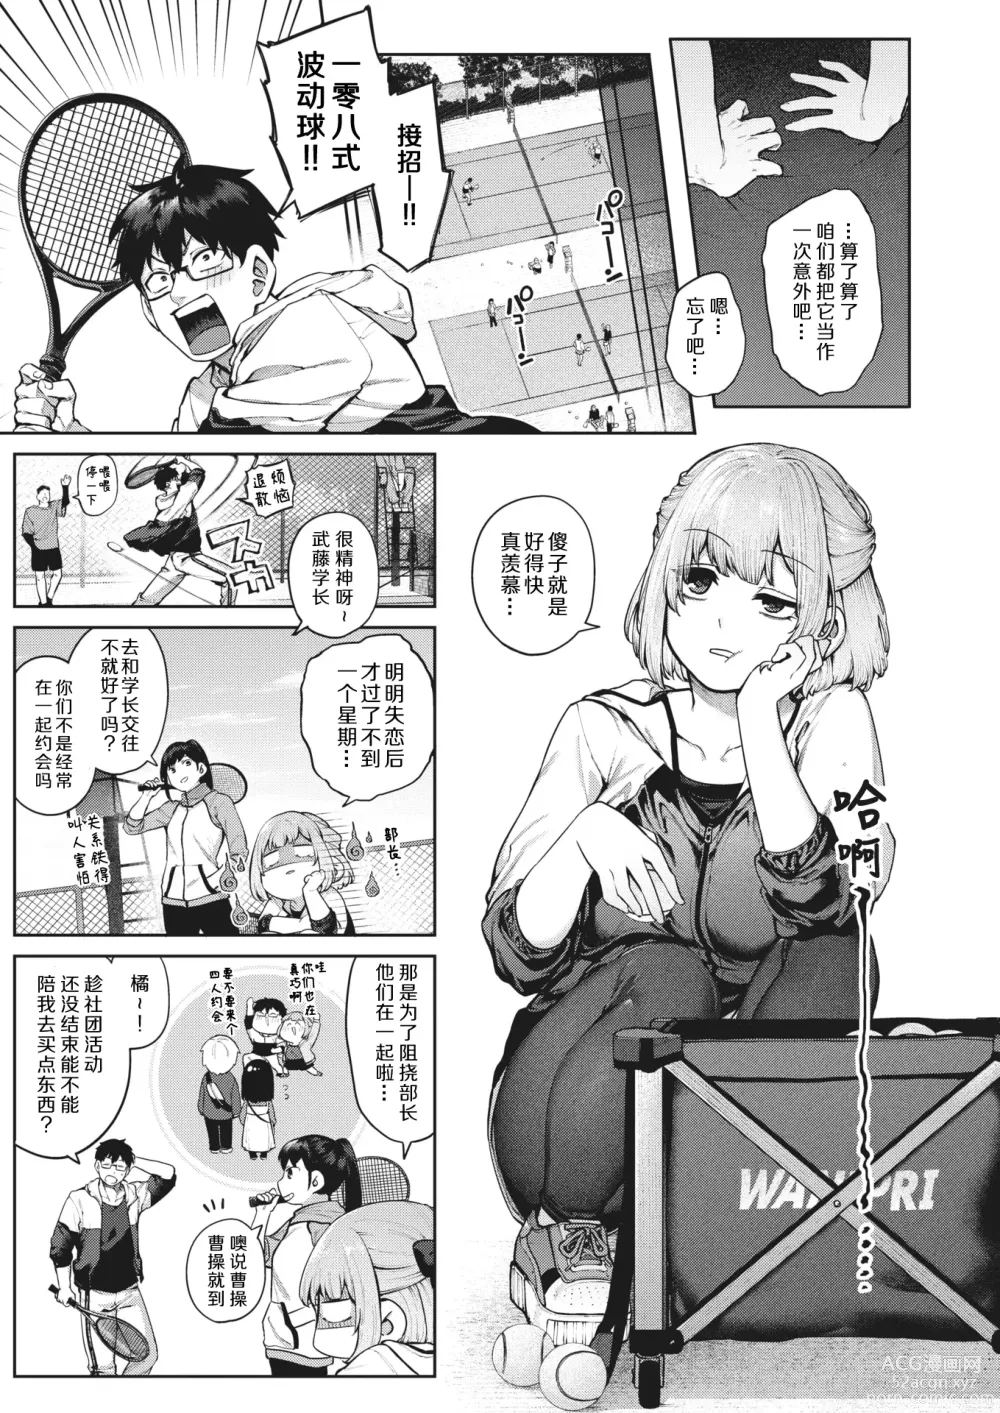 Page 4 of manga 垫脚石之恋